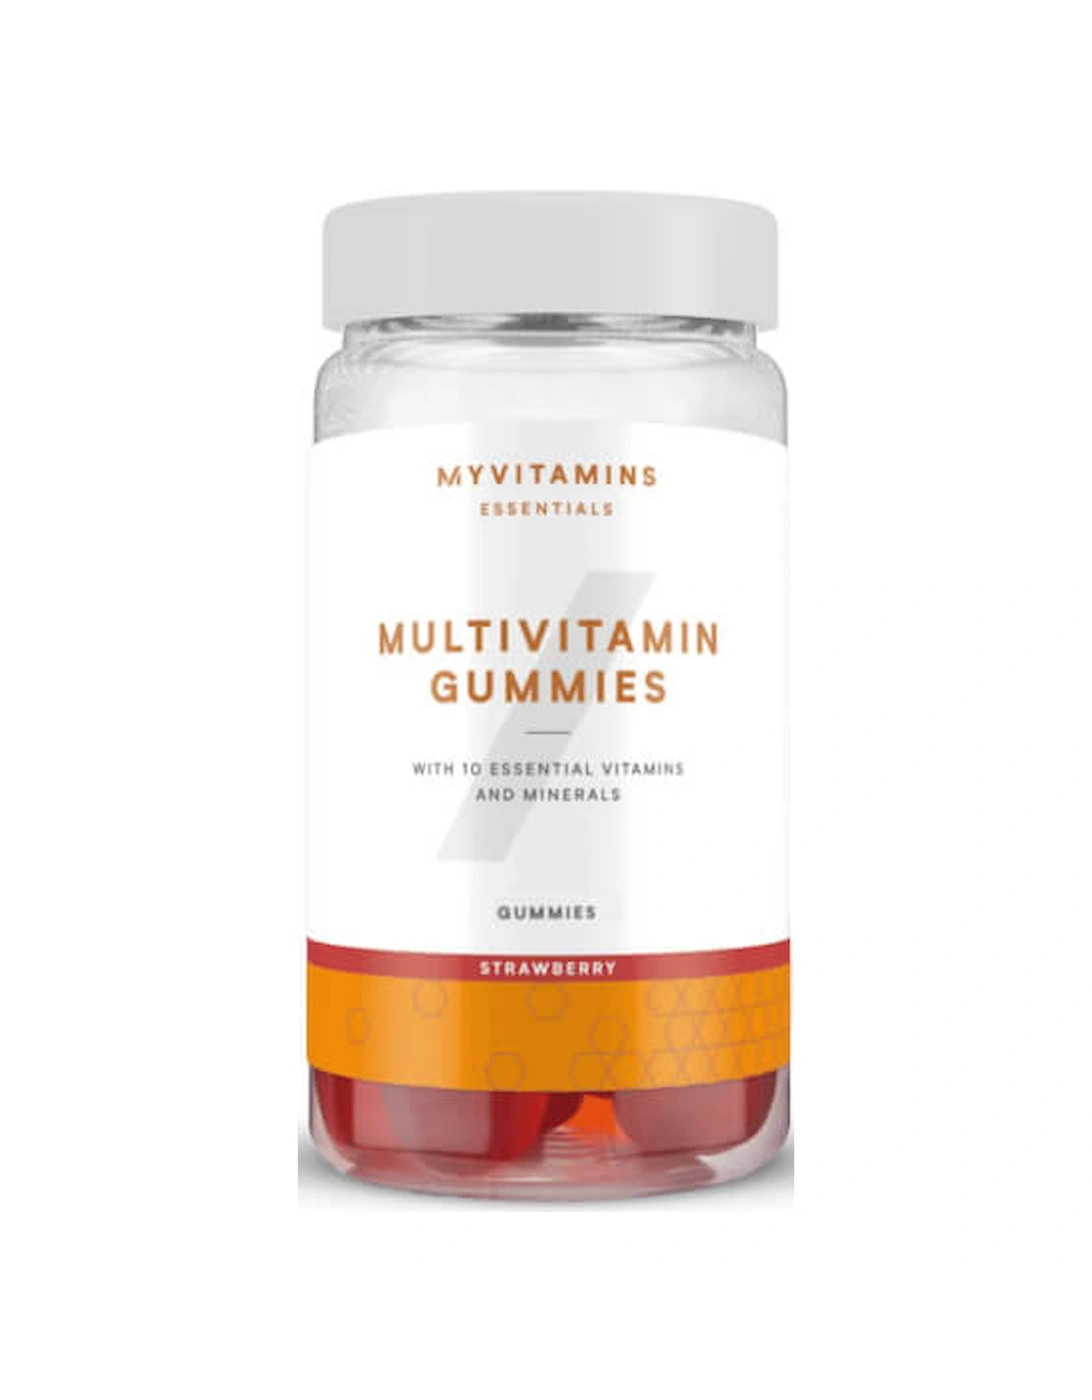 Multivitamin Gummies, Strawberry, 30 Gummies - Myvitamins, 2 of 1